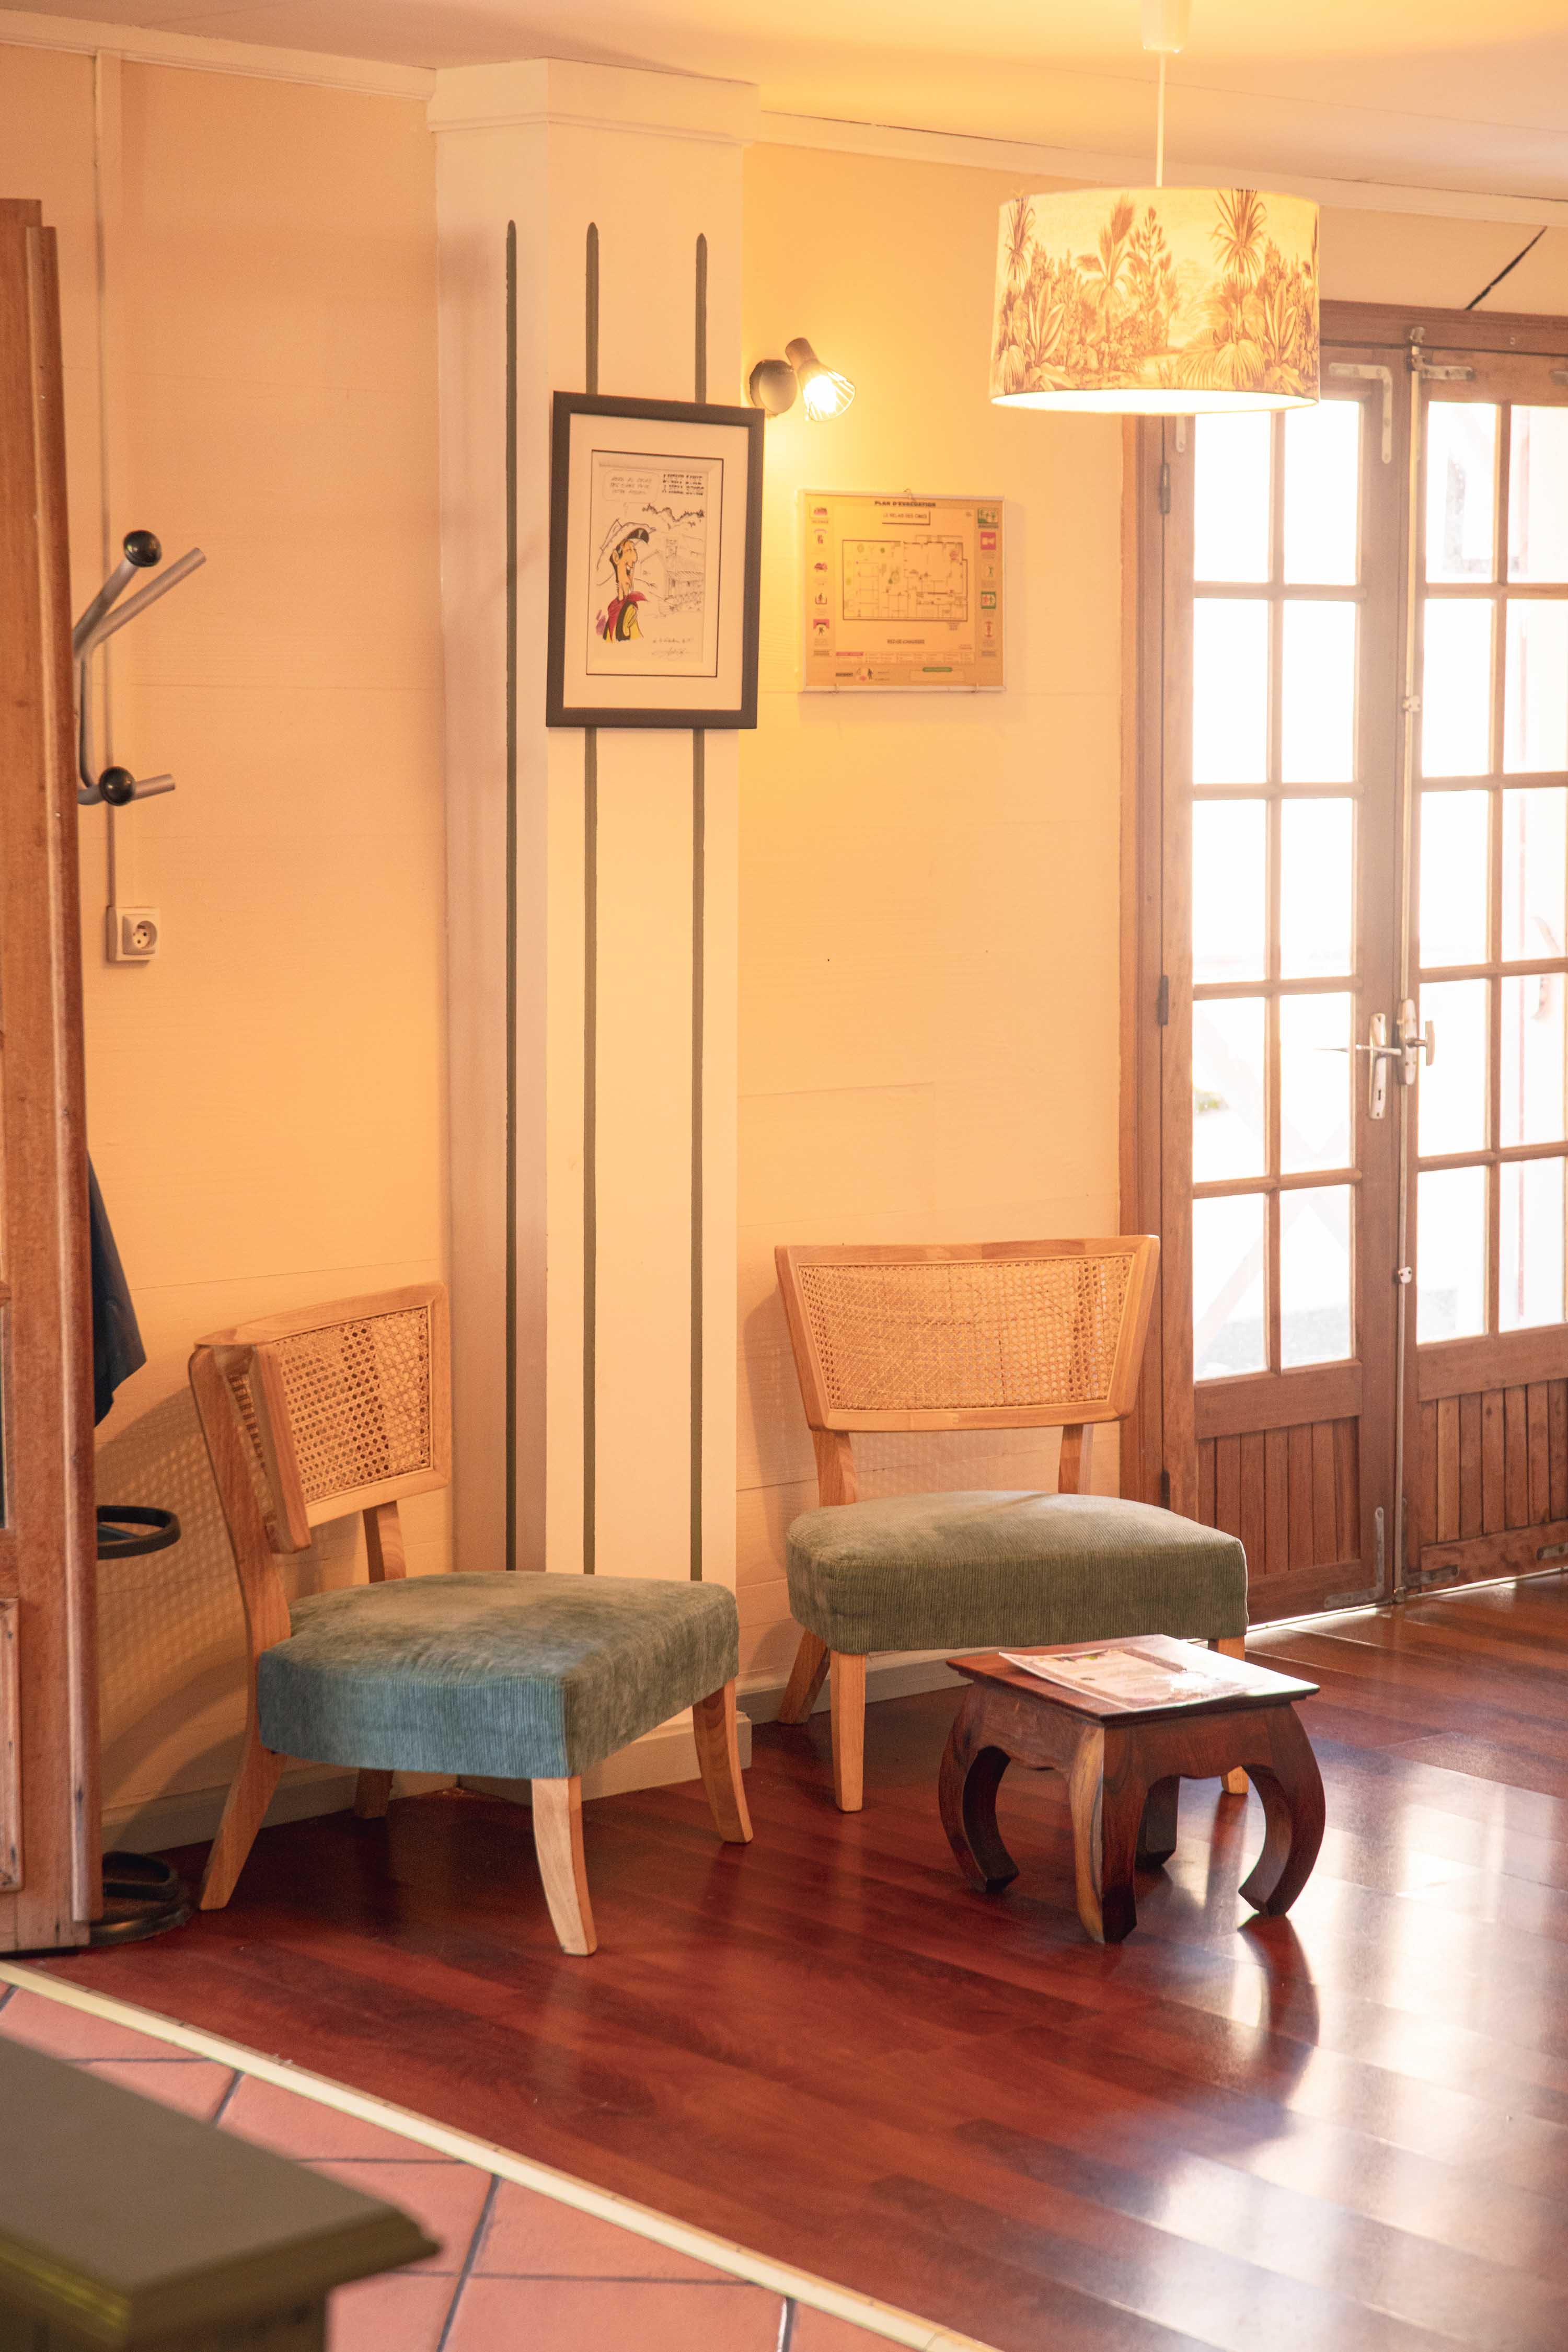 Furniture in a room | Source : Hotel Le Relais des Cîmes - www.relaisdescimes.com